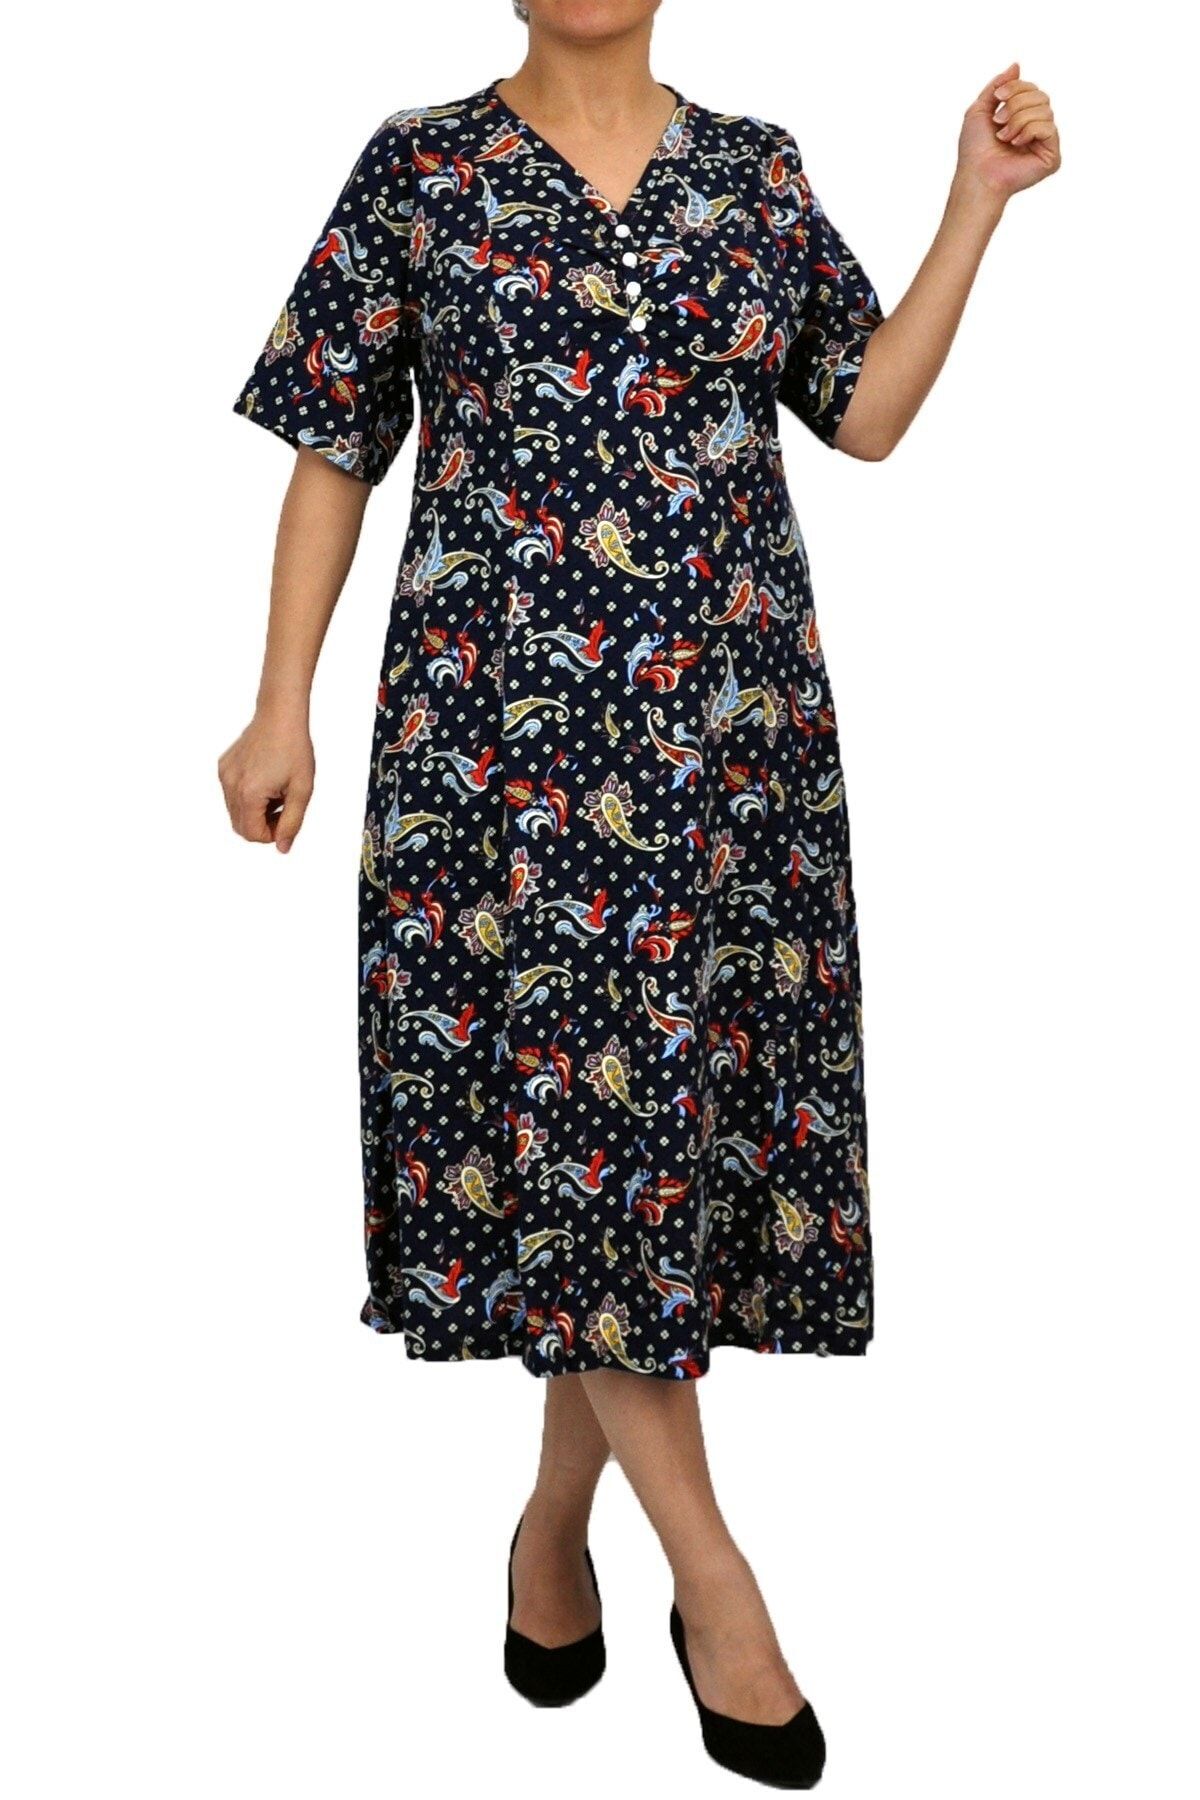 Dükkan Moda Kadın Büyük Beden Elbise Kısa Kollu Renkli Damla Desenli